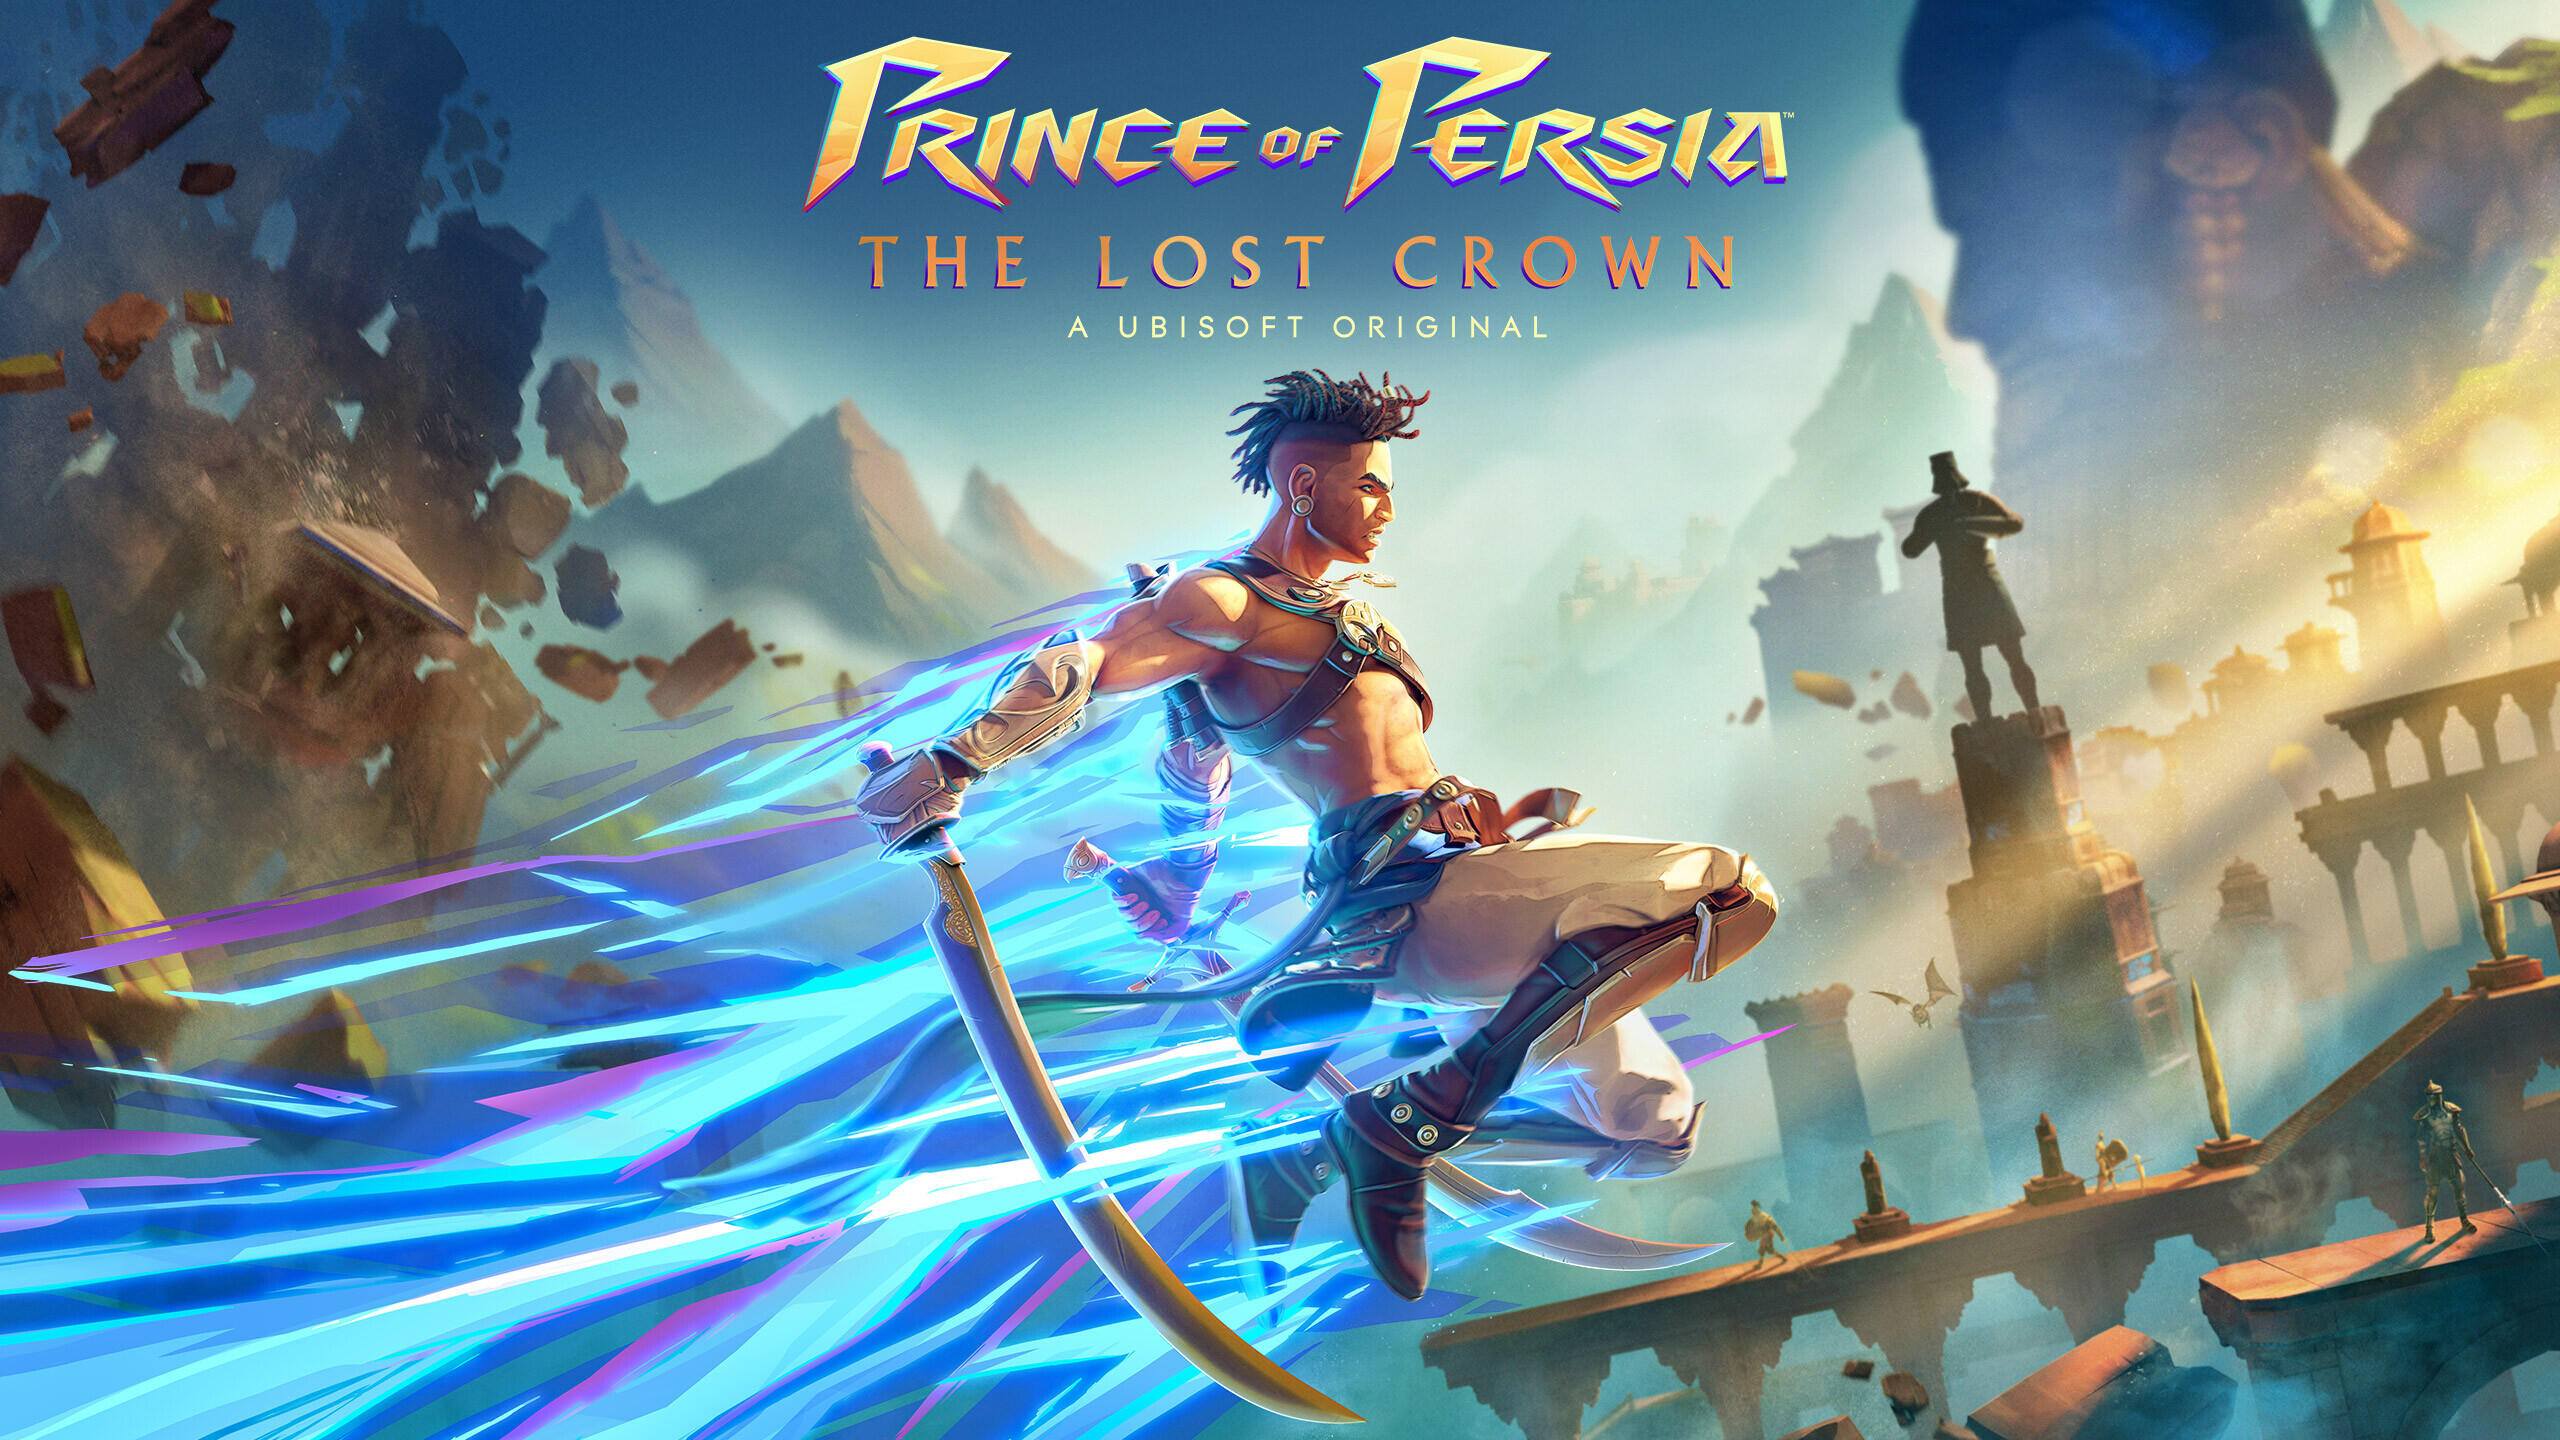 Persiapkan Diri Agan! Kerajaan Persia Menanti di Prince of Persia: The Lost Crown!